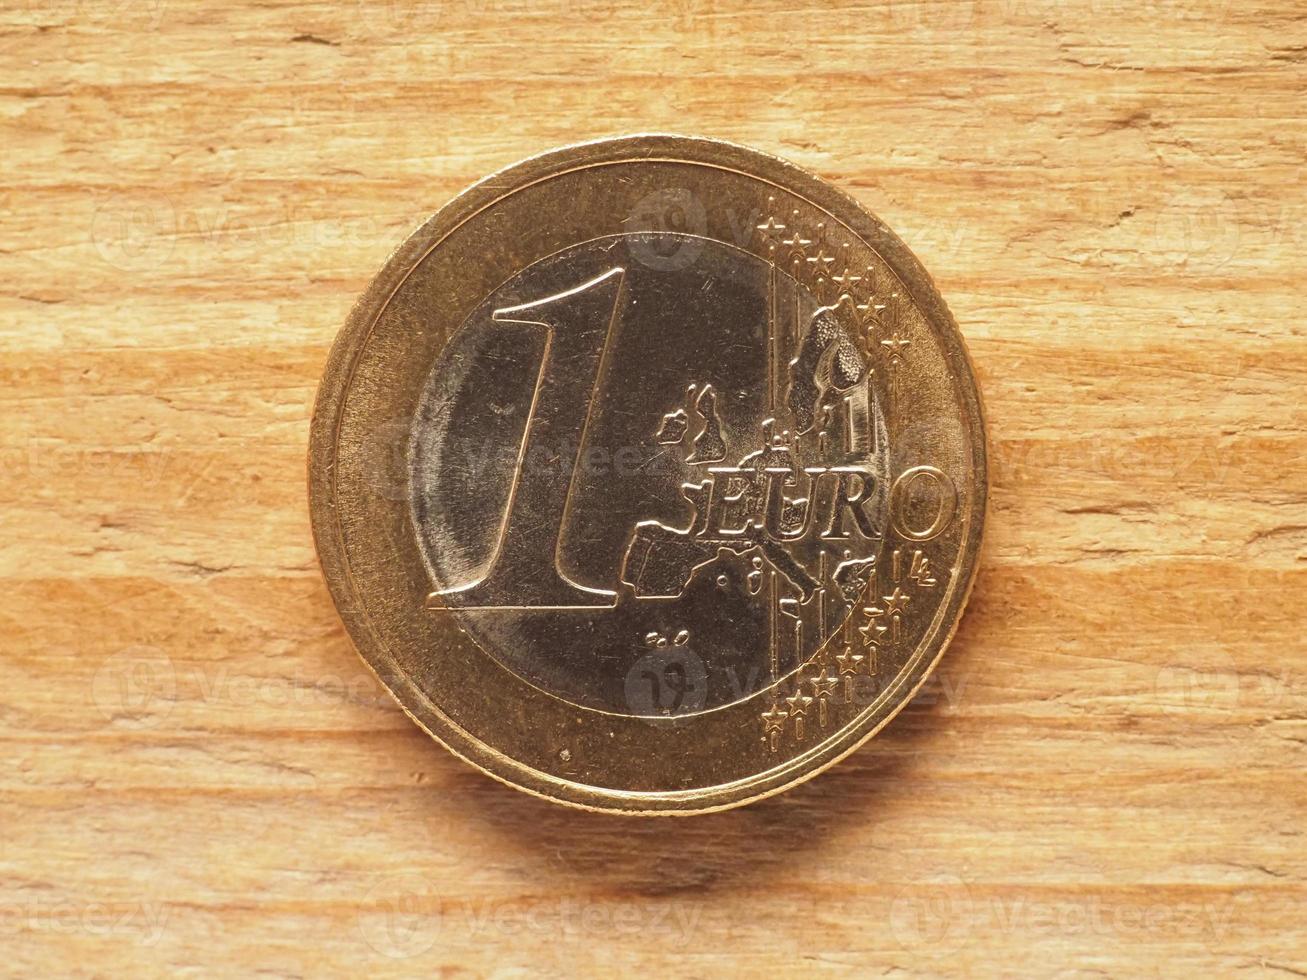 Pièce de 1 euro face commune, monnaie de l'europe photo